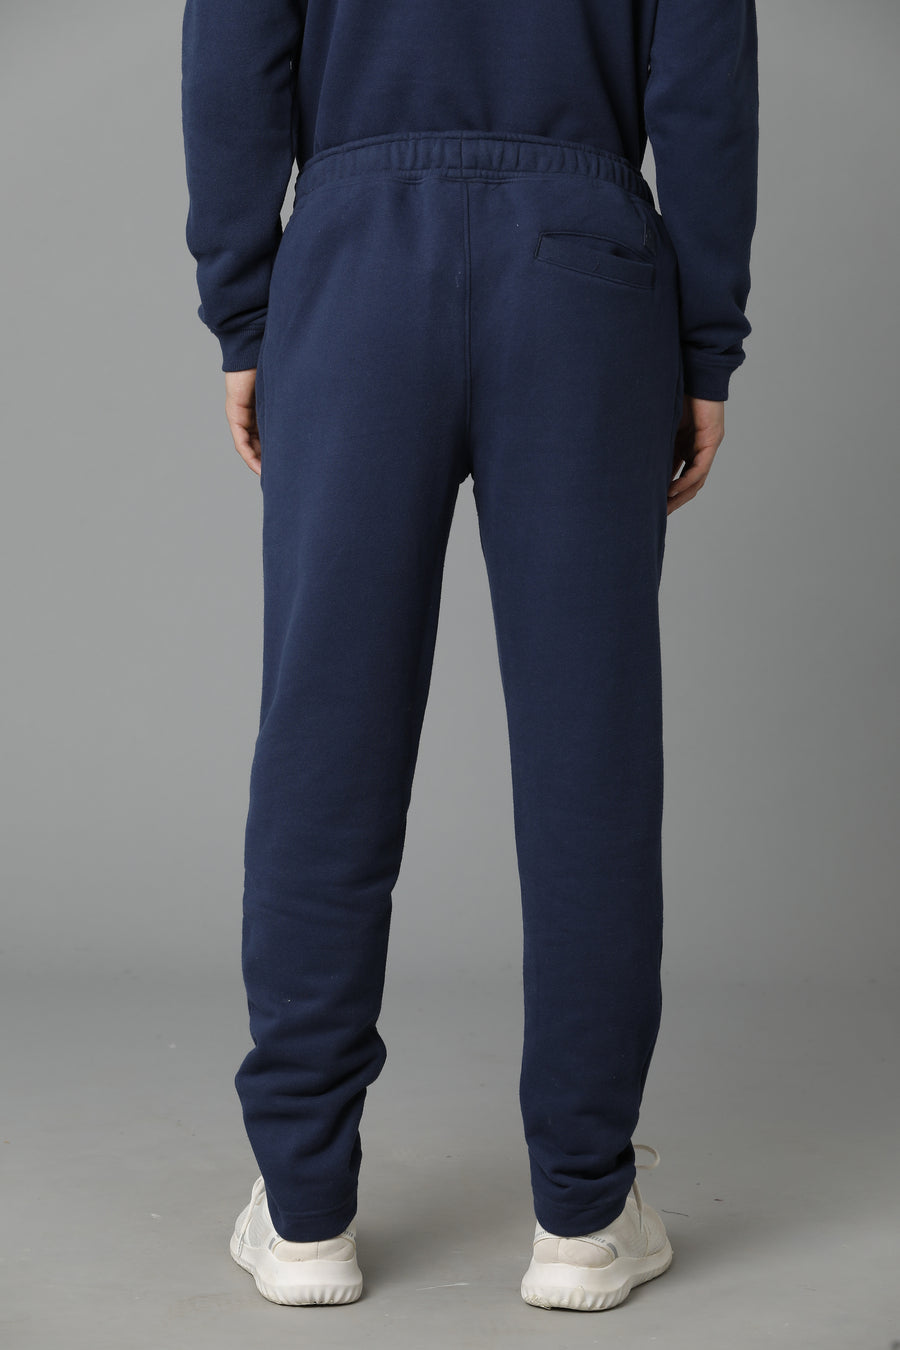 Voi Jeans Men's Navy Dress Blue Trackpant - VOTP0129